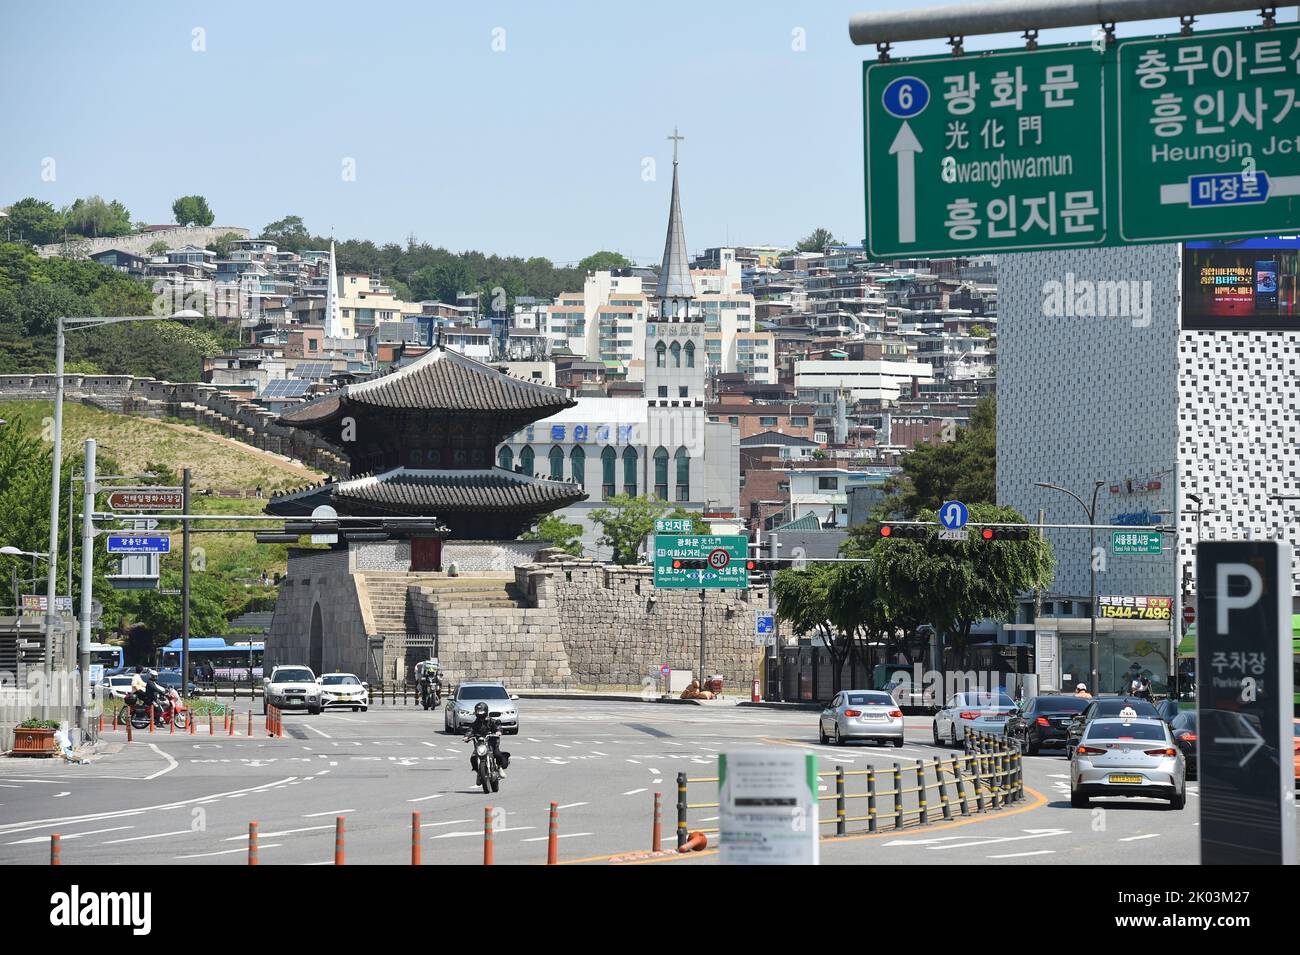 Heunginjimun, das „Tor der aufsteigenden Wohltätigkeit“ oder besser bekannt als Dongdaemun, ist eines der acht Tore von Seoul in der Festungsmauer von Seoul, einem prominenten Wahrzeichen im Zentrum von Seoul, Südkorea. Der koreanische Name „Dongdaemun“ bedeutet „großes Osttor“ und wurde so benannt, weil es das größte östliche Tor in der Mauer war, das Seoul während der Joseon-Dynastie umgab Stockfoto